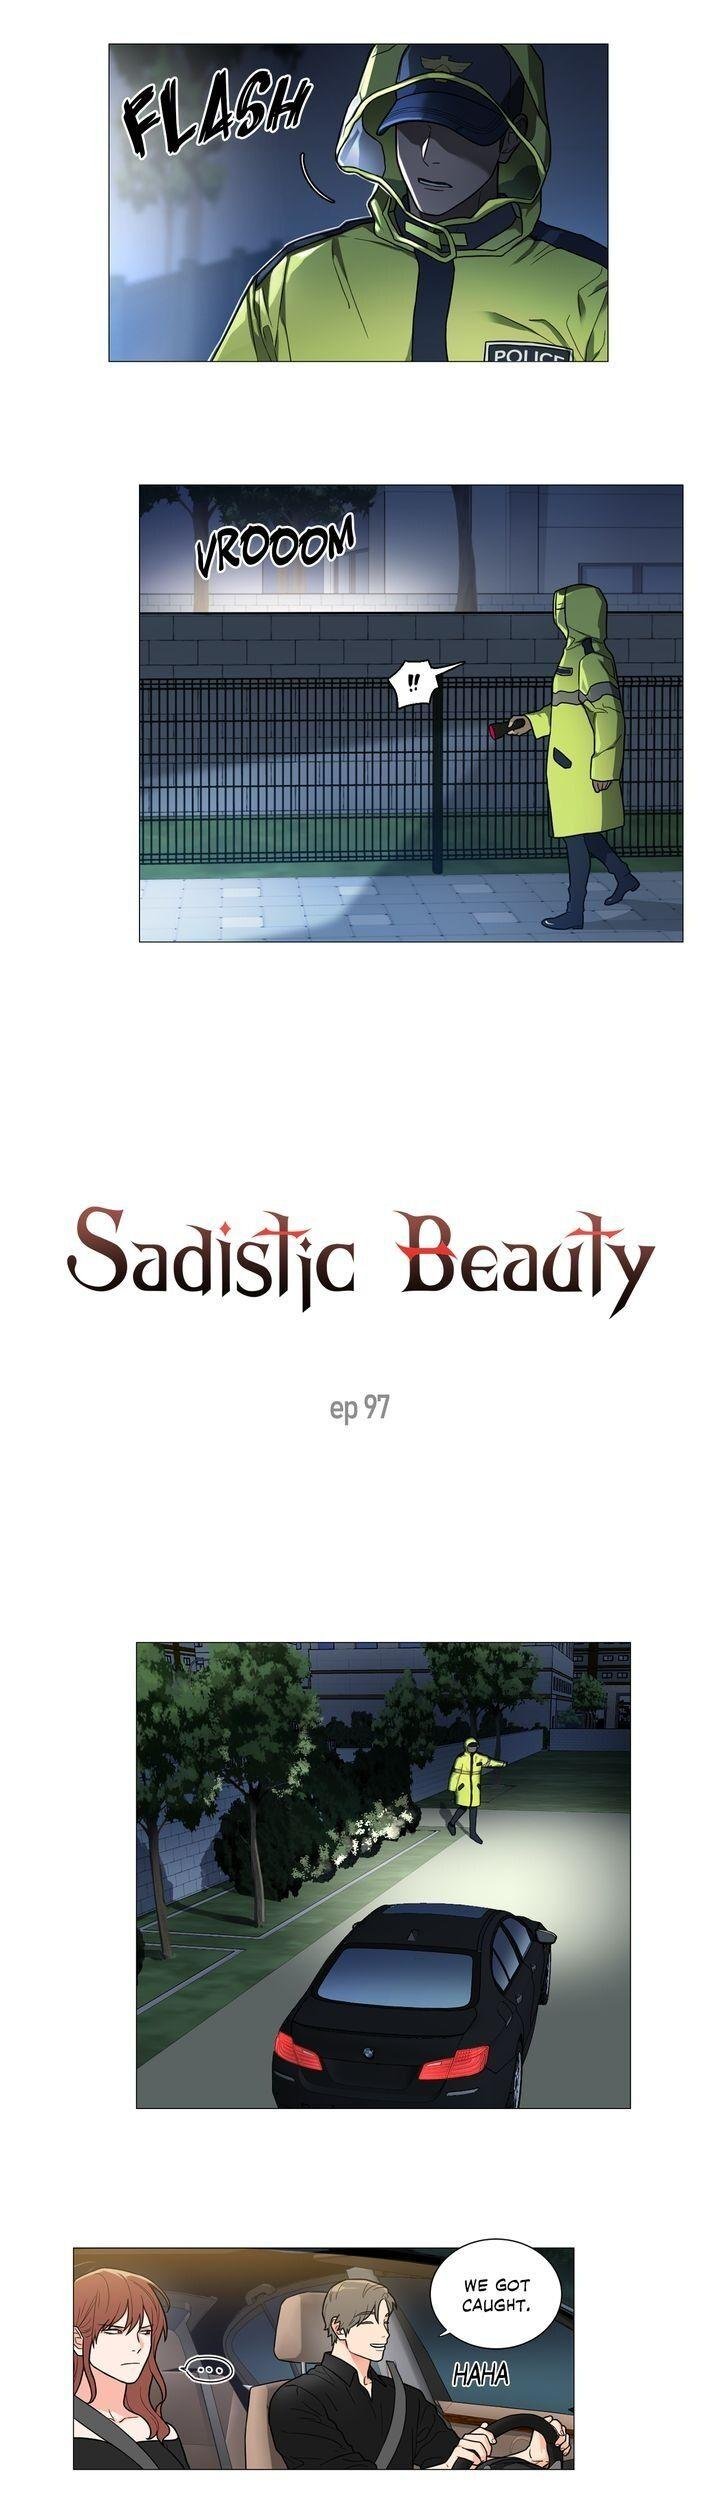 sadistic-beauty-chap-97-1